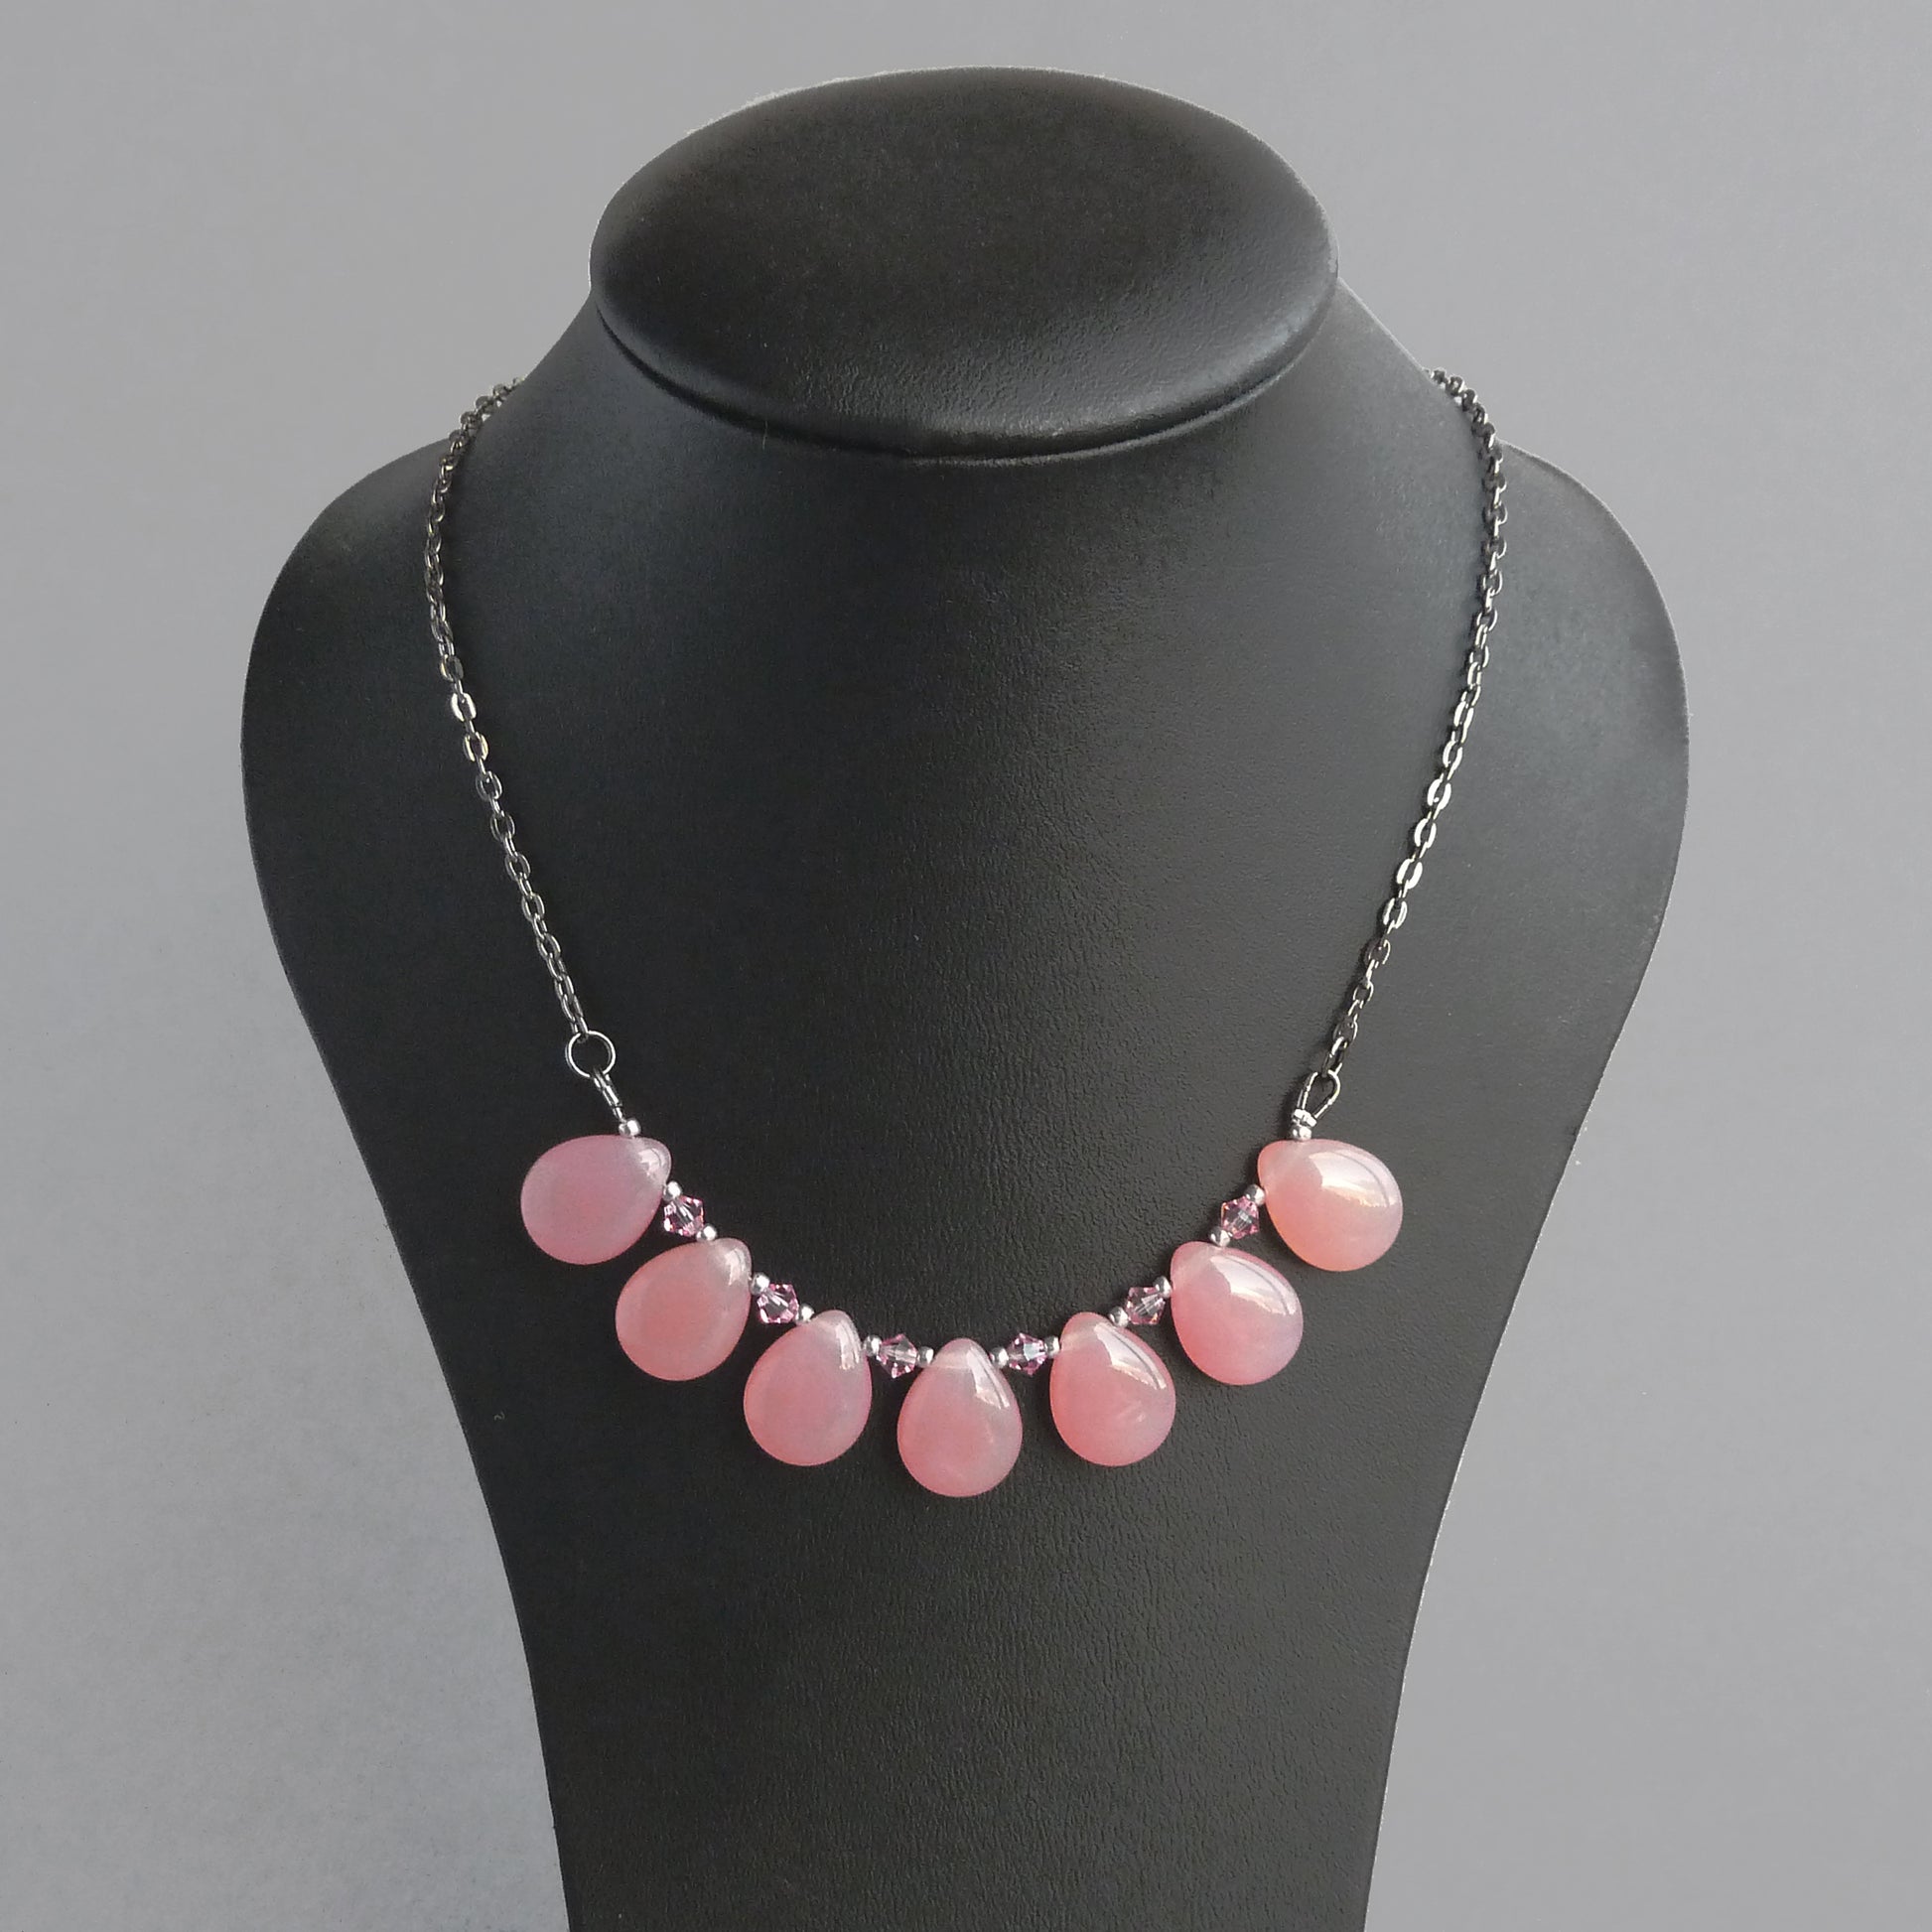 Everyday dusky pink necklace